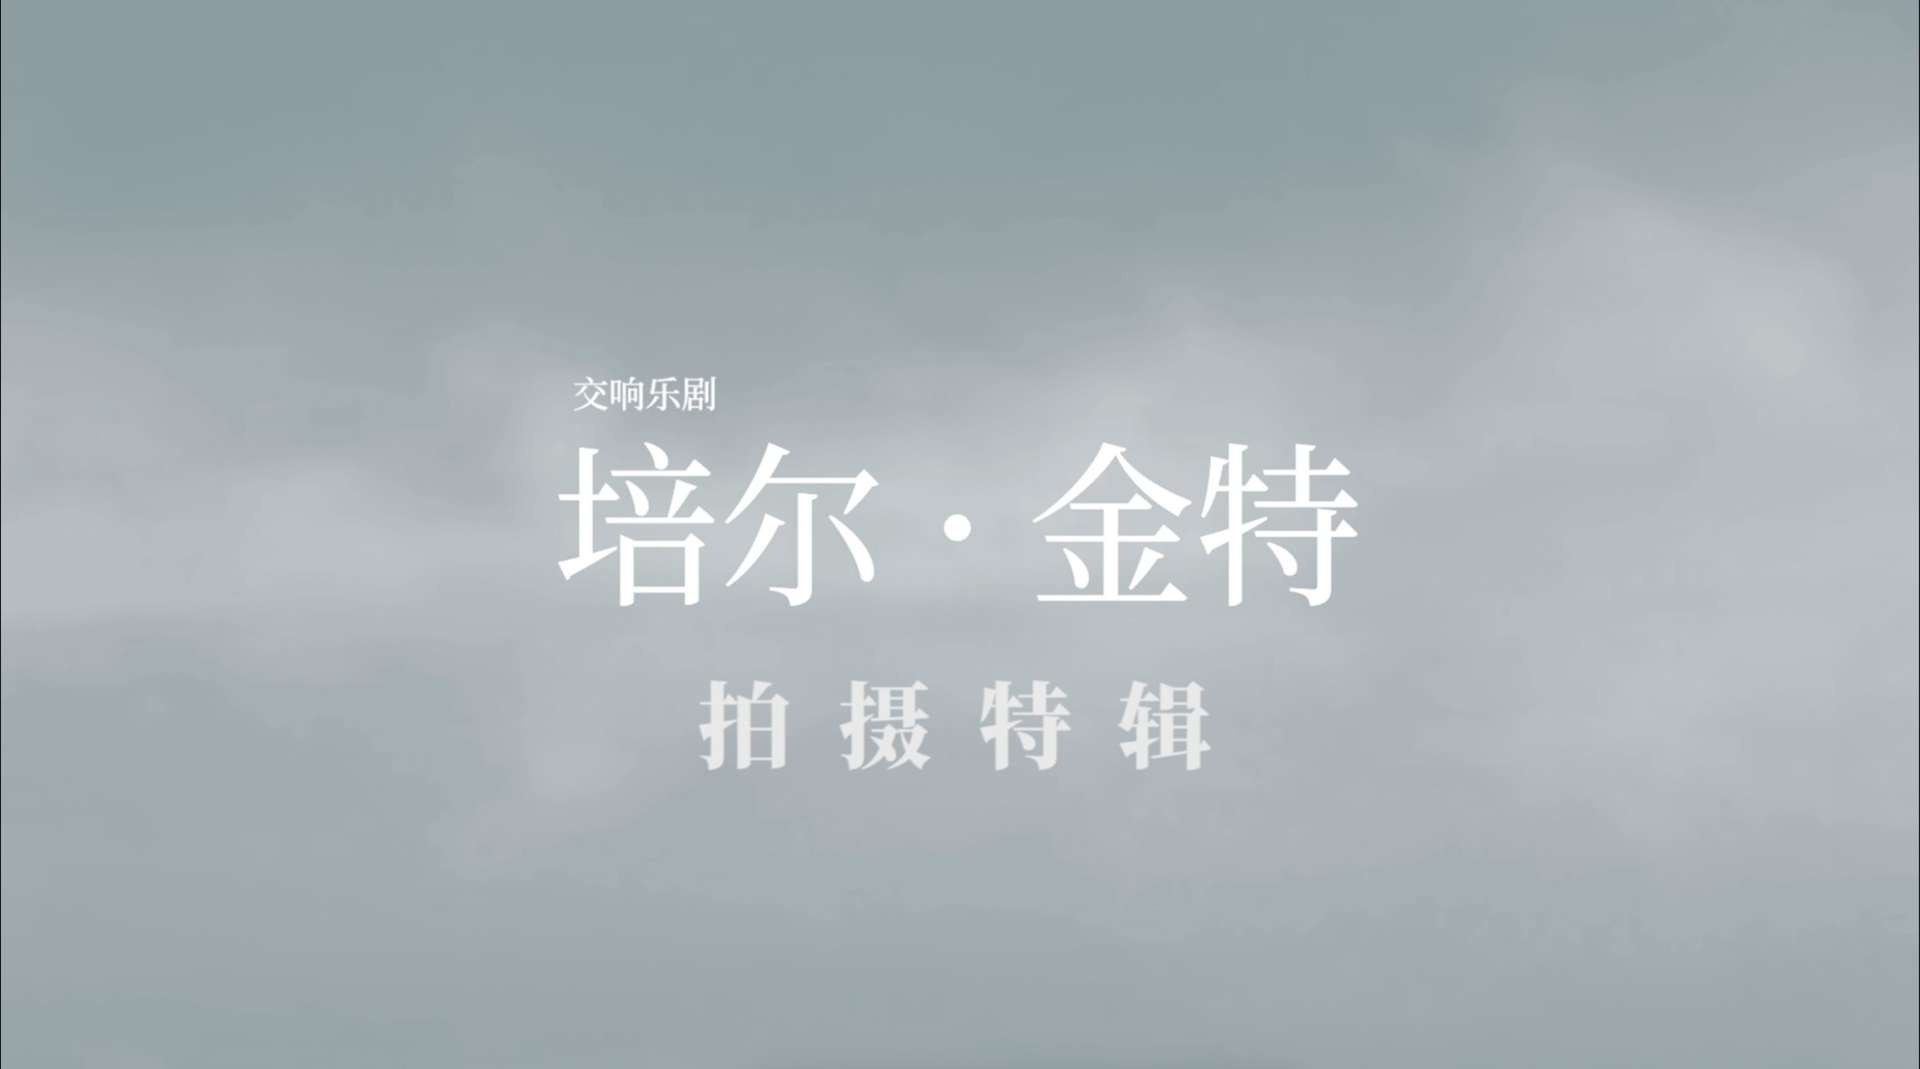 王耀庆-交响乐剧《培尔金特》概念预告 纪录片